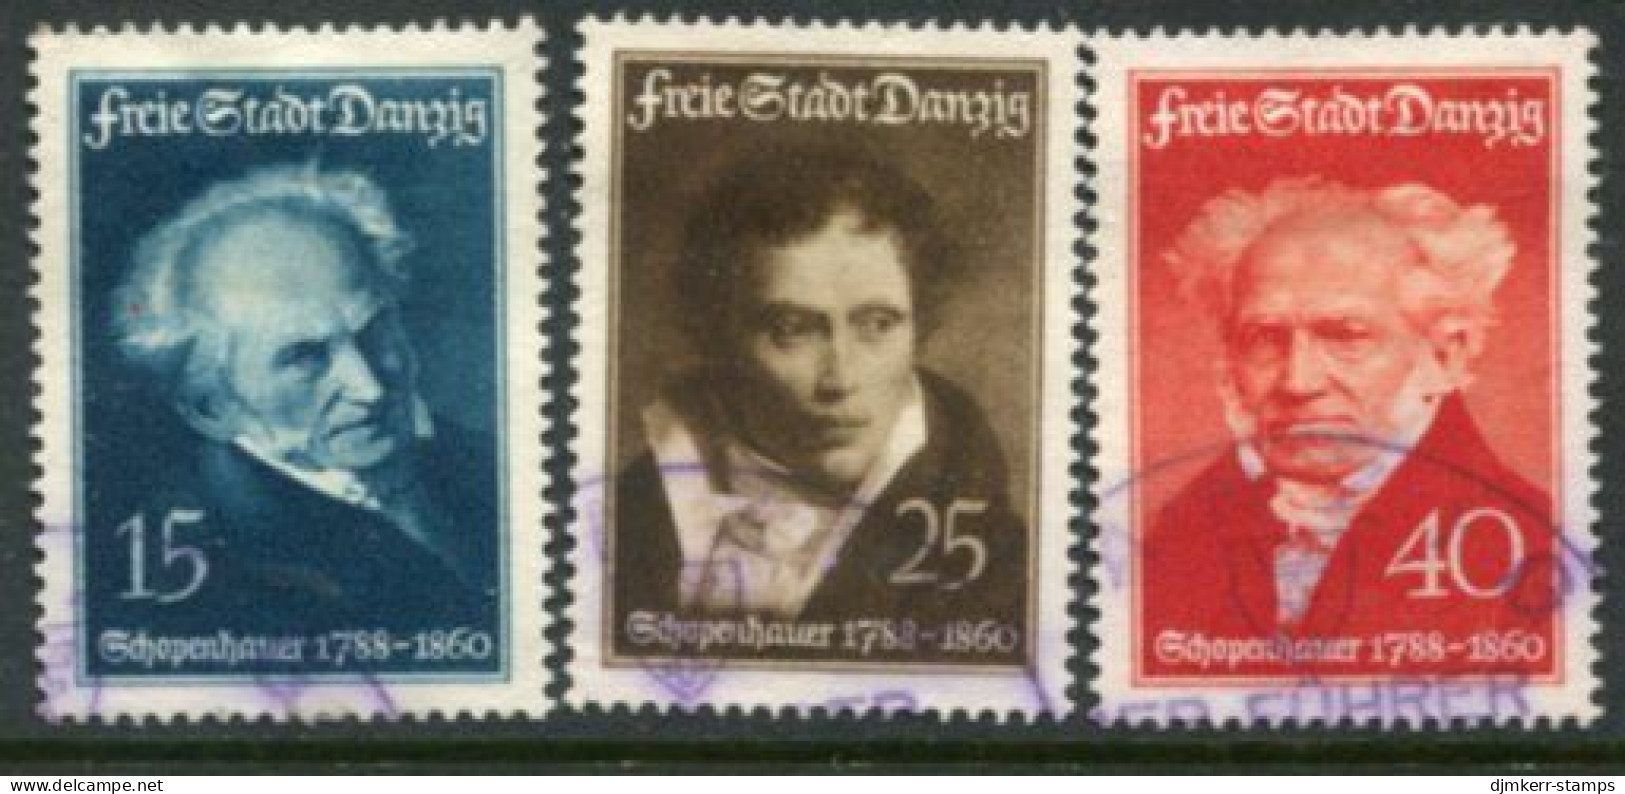 DANZIG 1938 Schopenhauer Birth Anniversary Used  Michel 281-83 - Usados